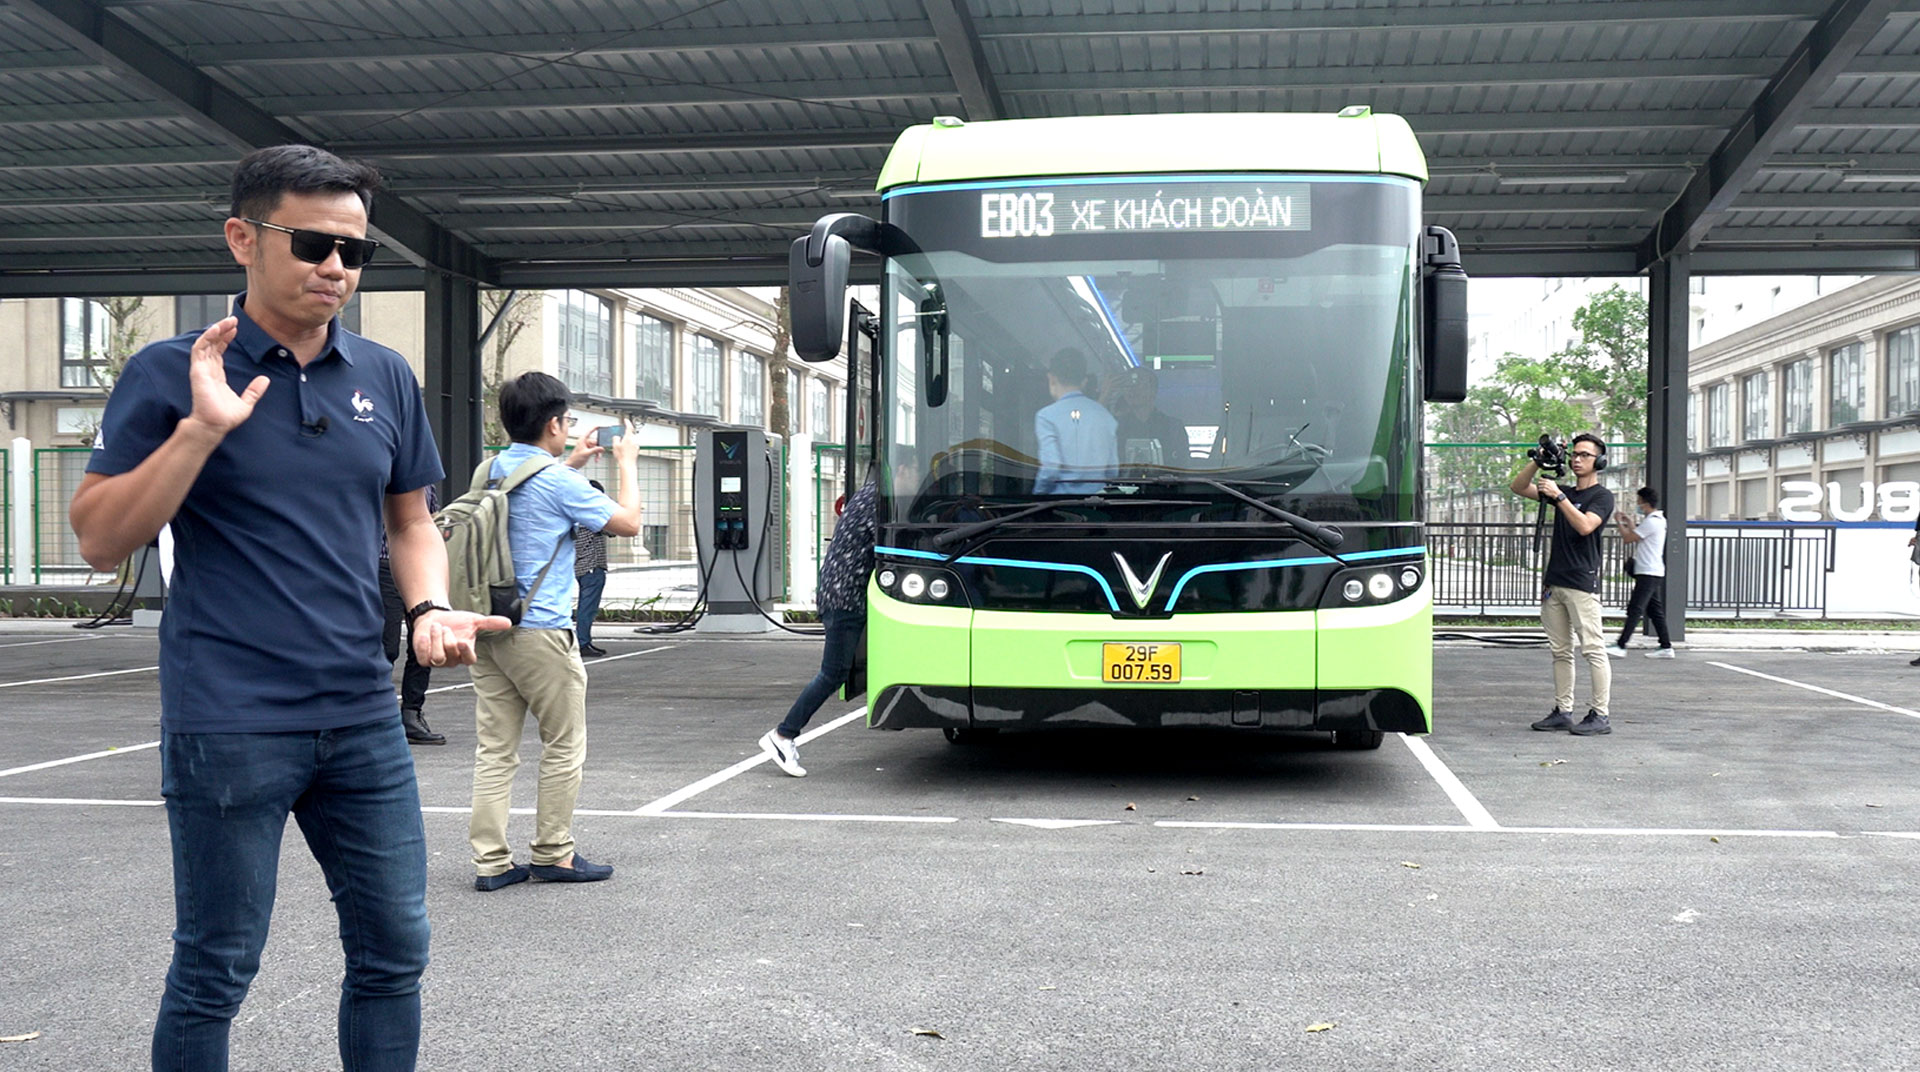 CHẠM MẶT VinBus - Xe bus điện thông minh đầu tiên tại Việt Nam